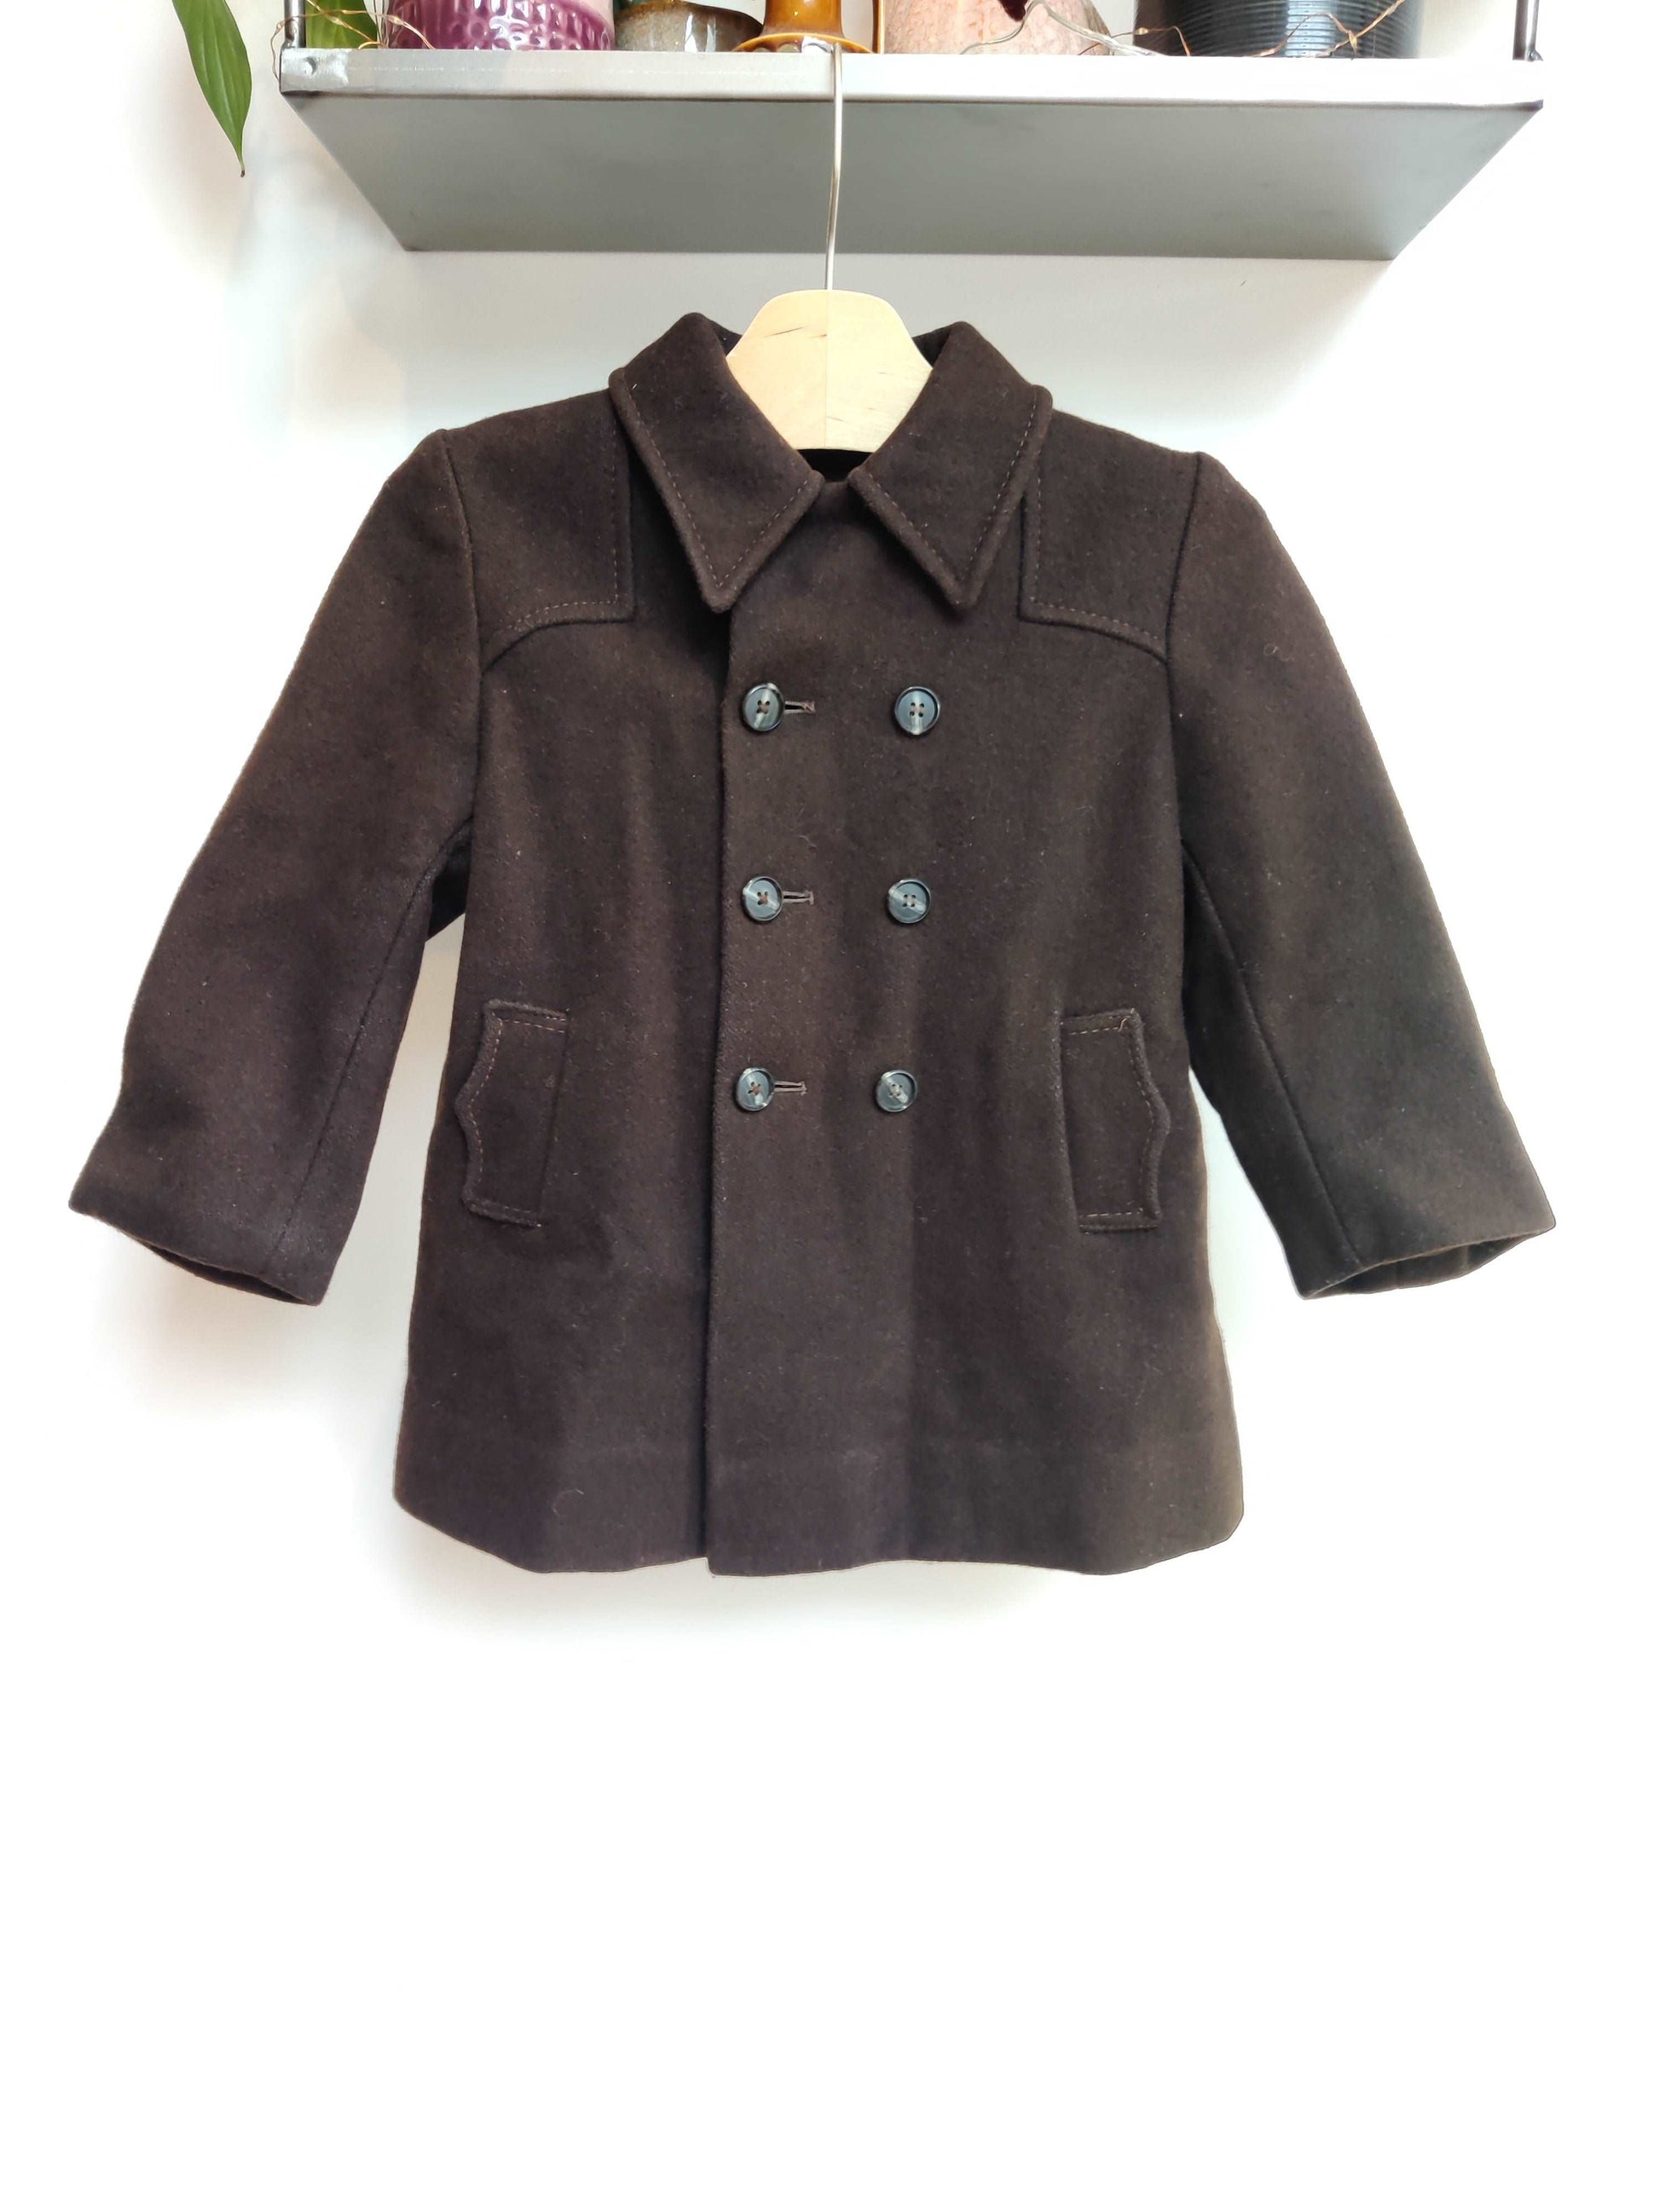 Chocolate brown vintage wool jacket age 3.